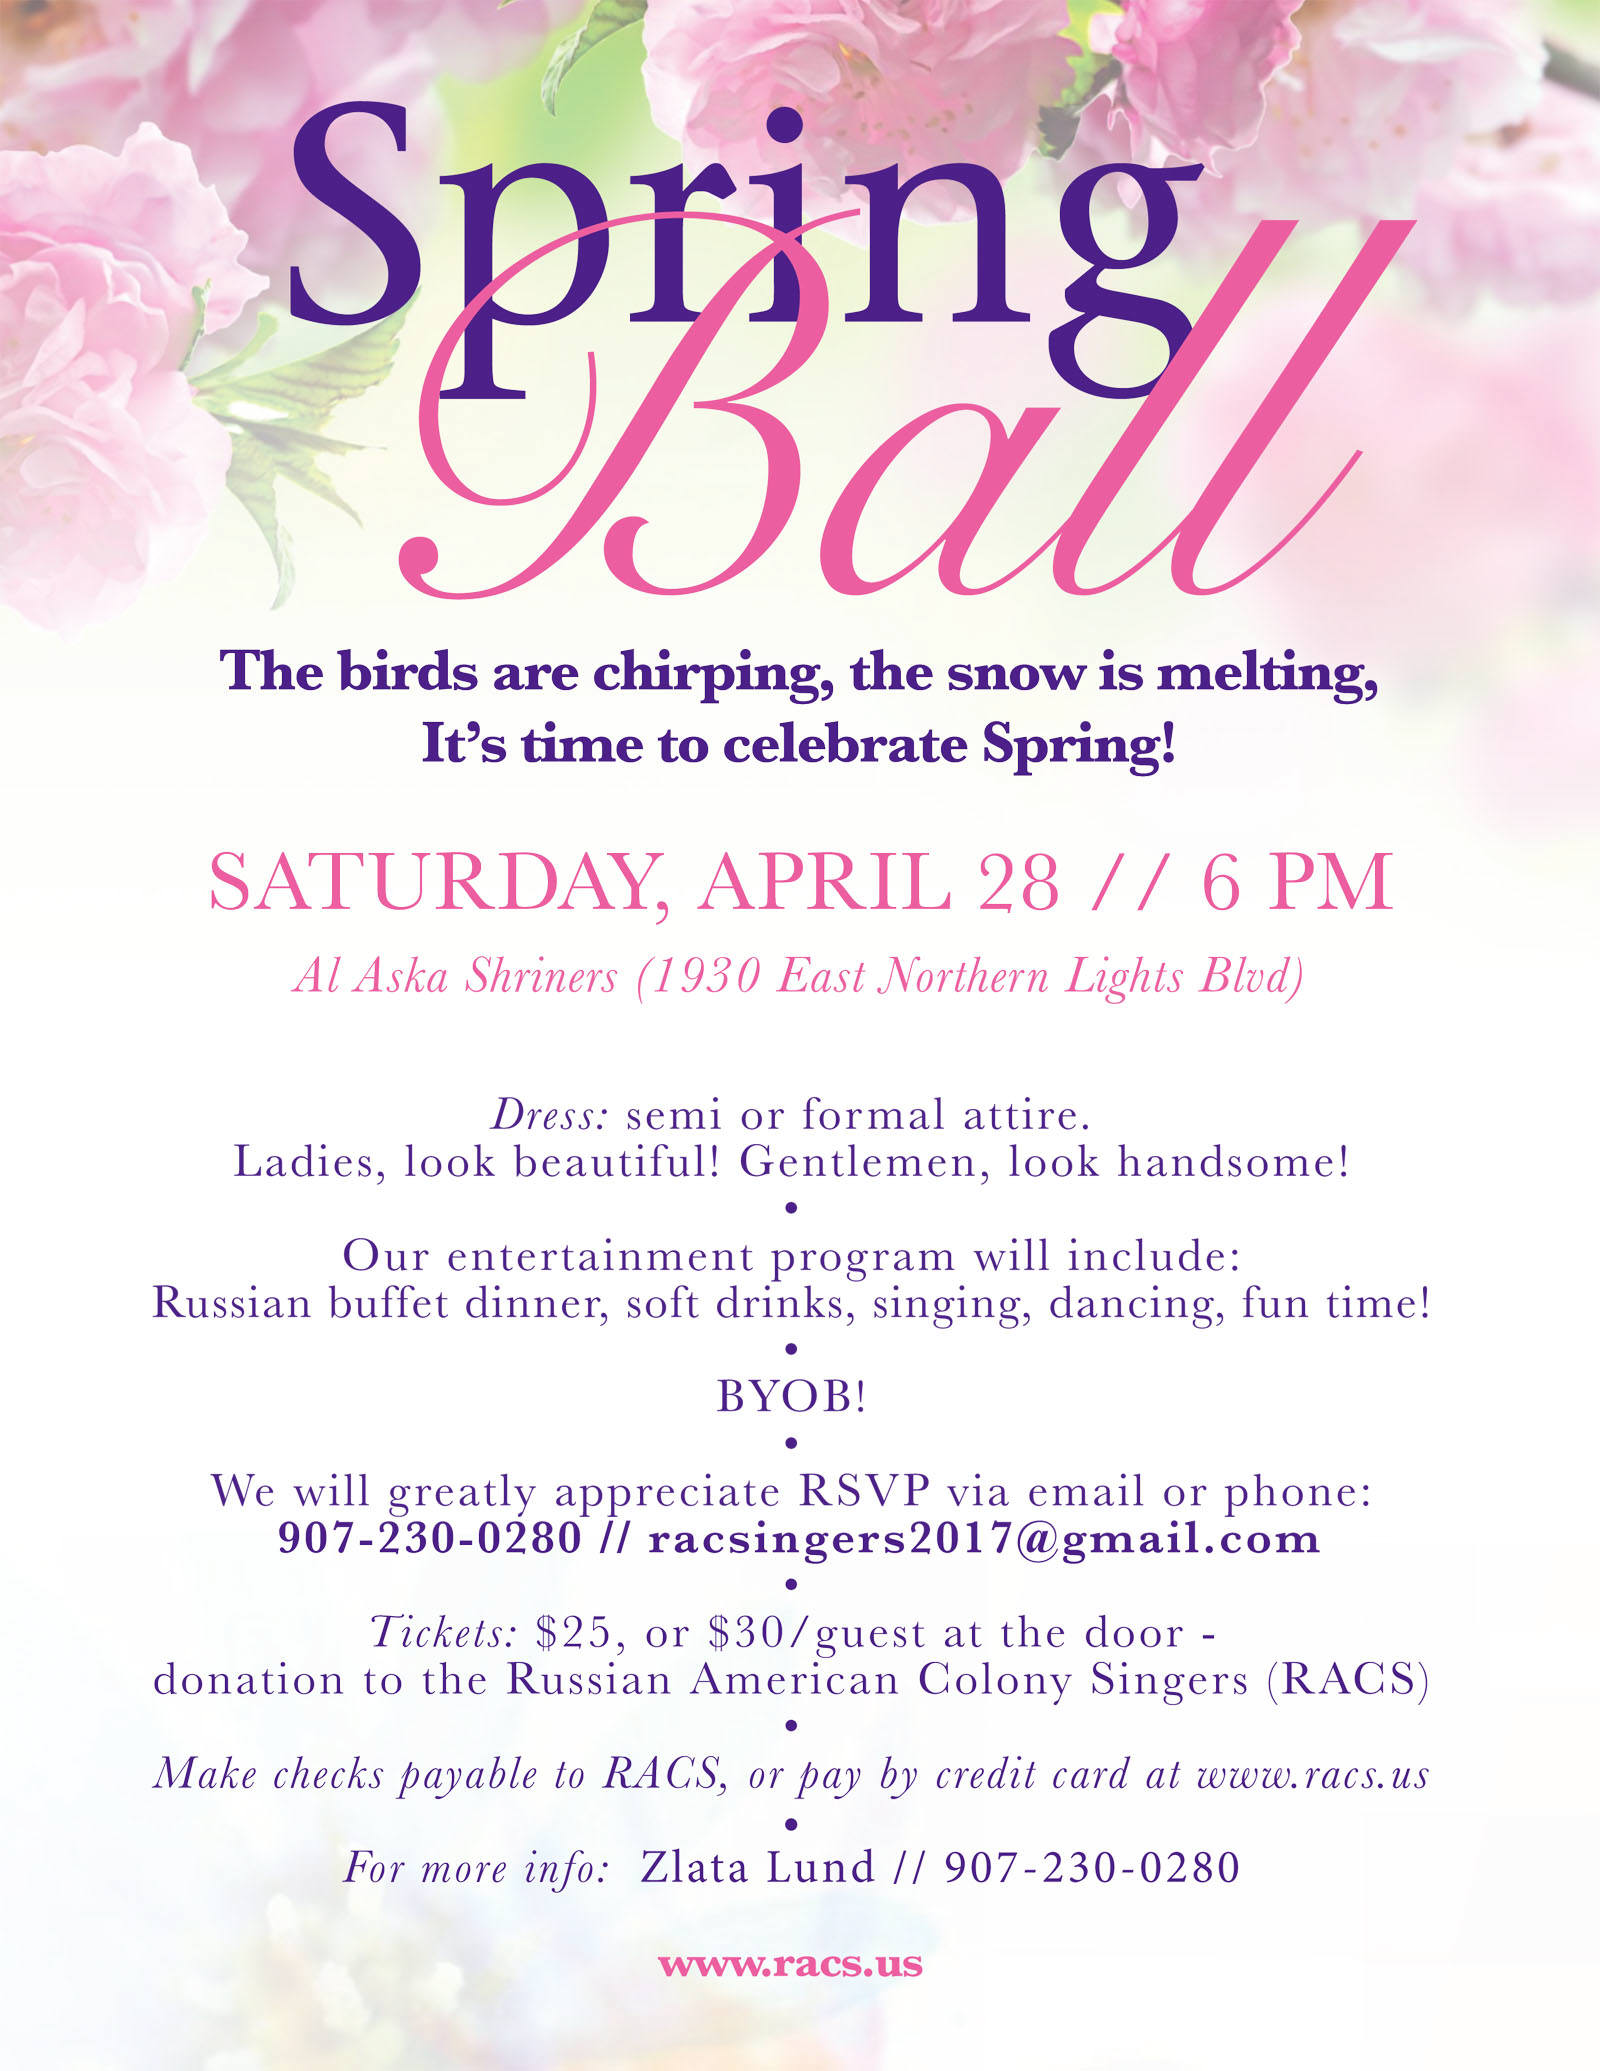 Spring Ball by RACS - April 28, 2018, 6 PM, at Al Aska Shriners, Anchorage.